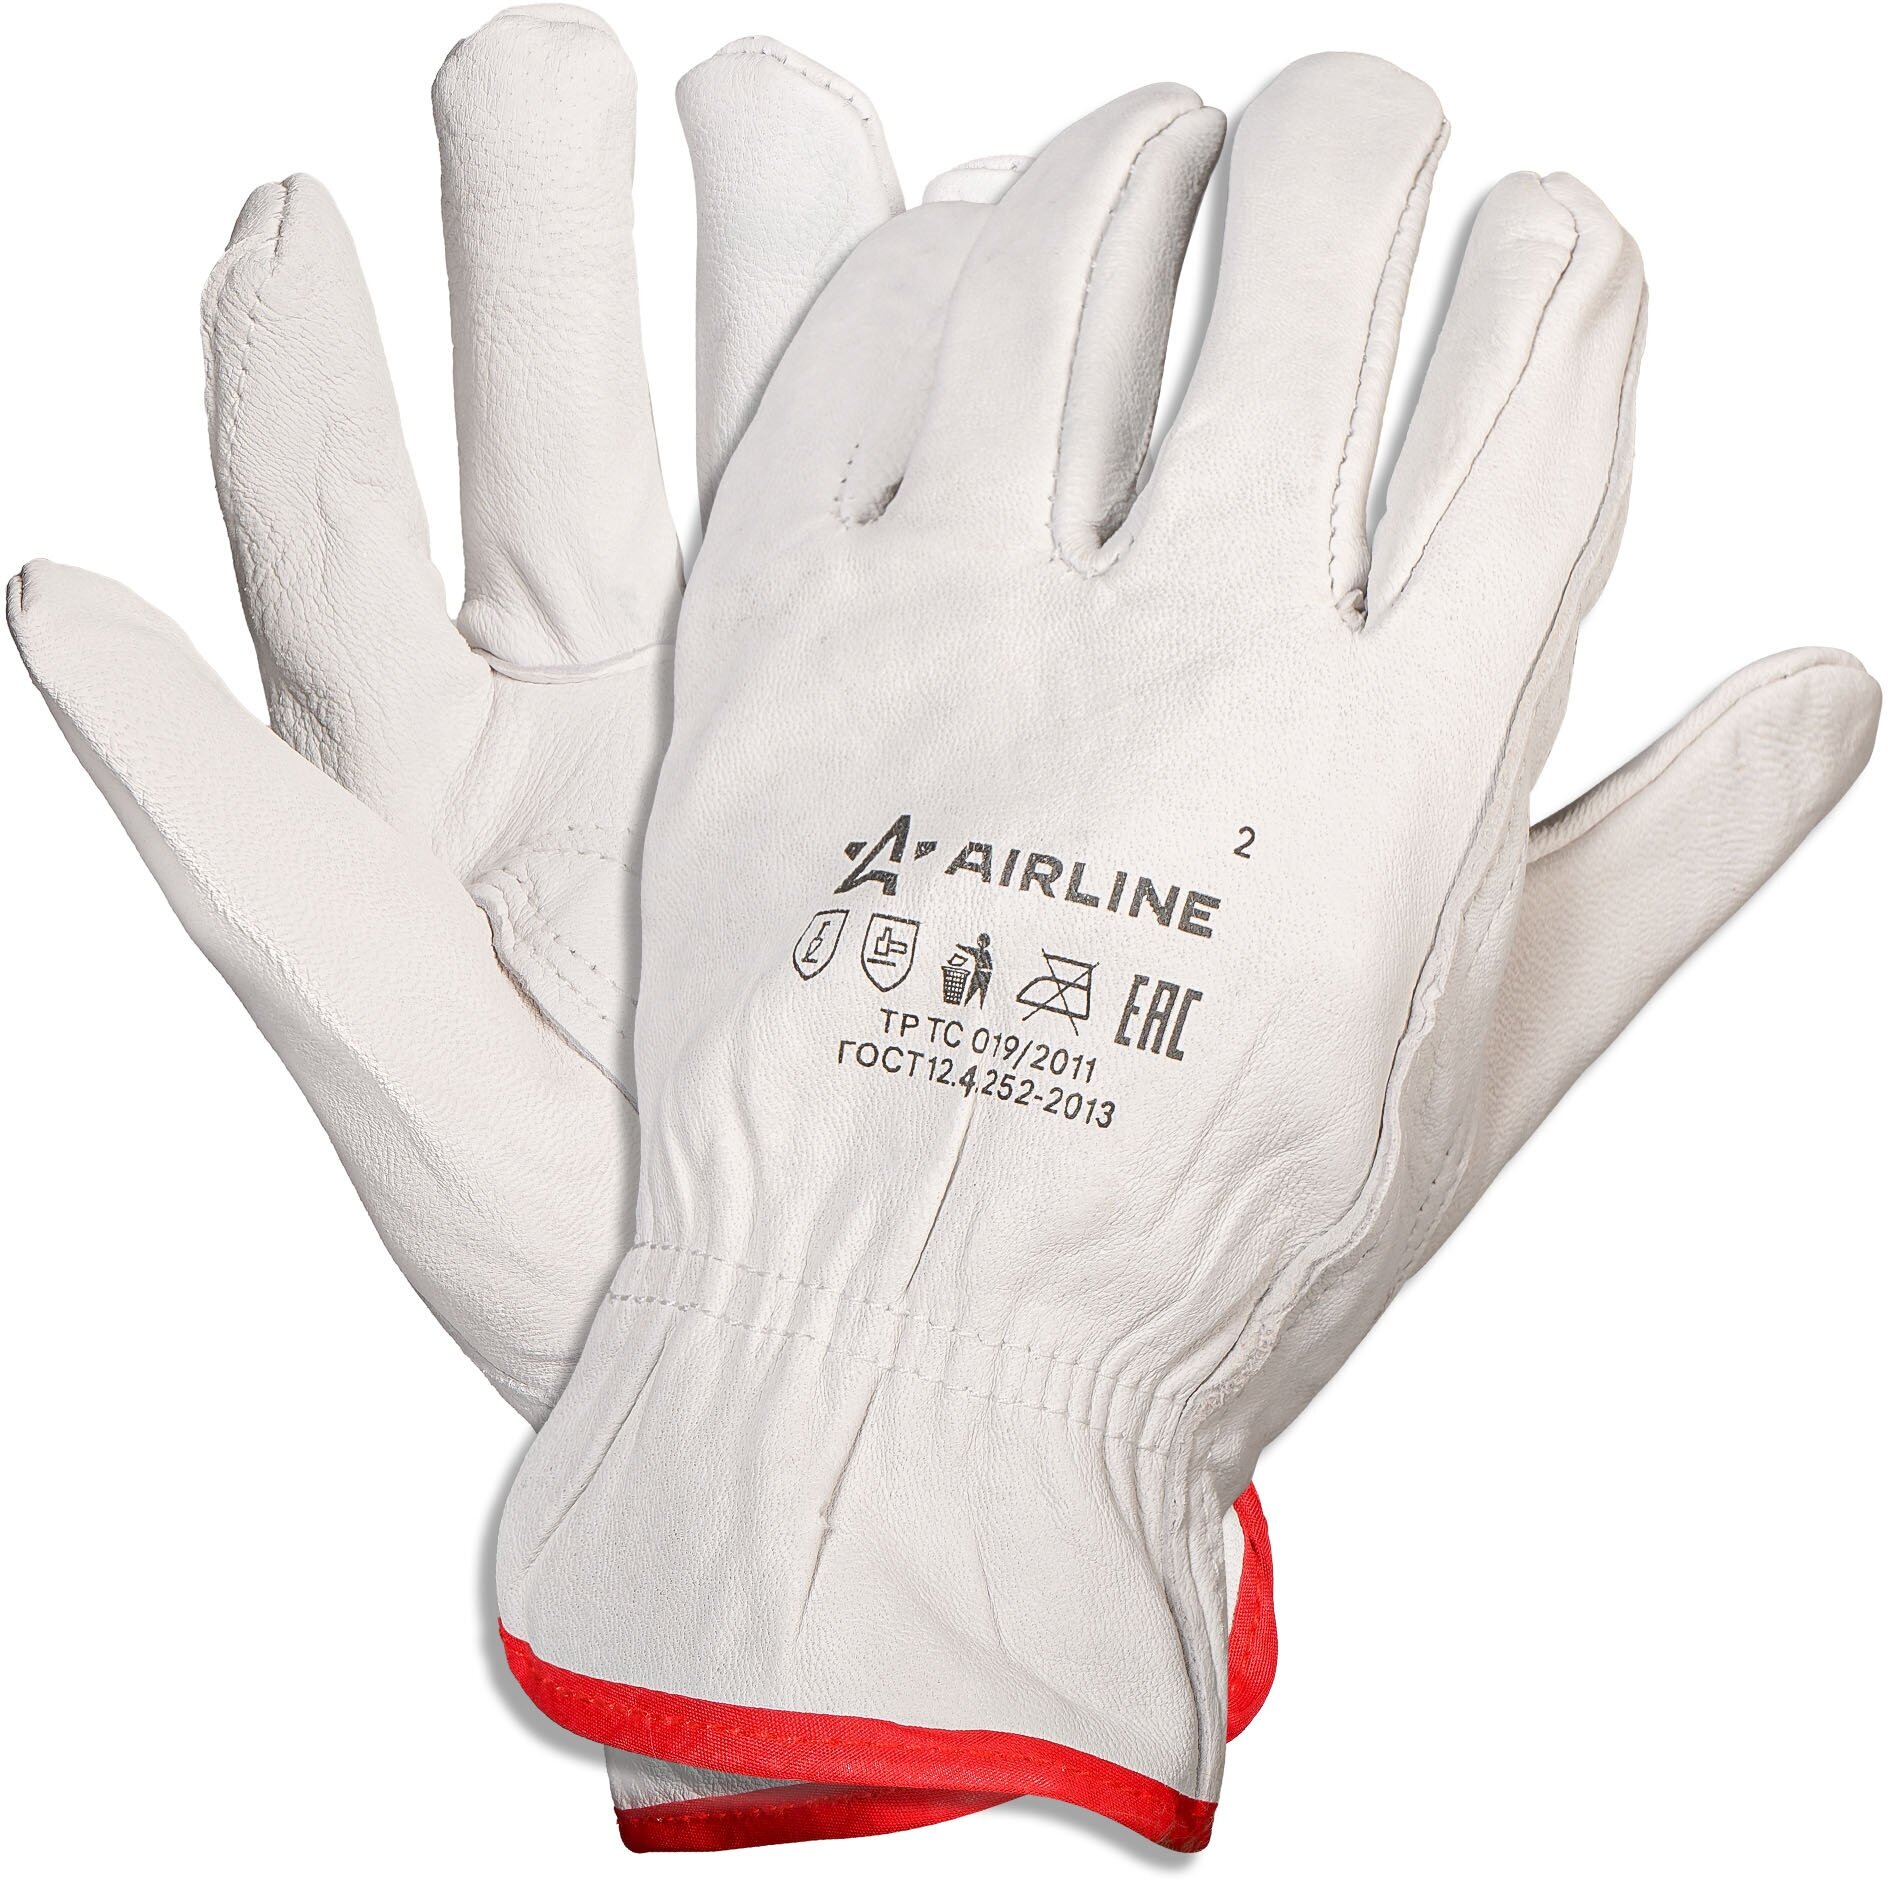 Перчатки натуральная мягкая кожа, водительские, (L) белые, с подвесом ADWG104 AIRLINE